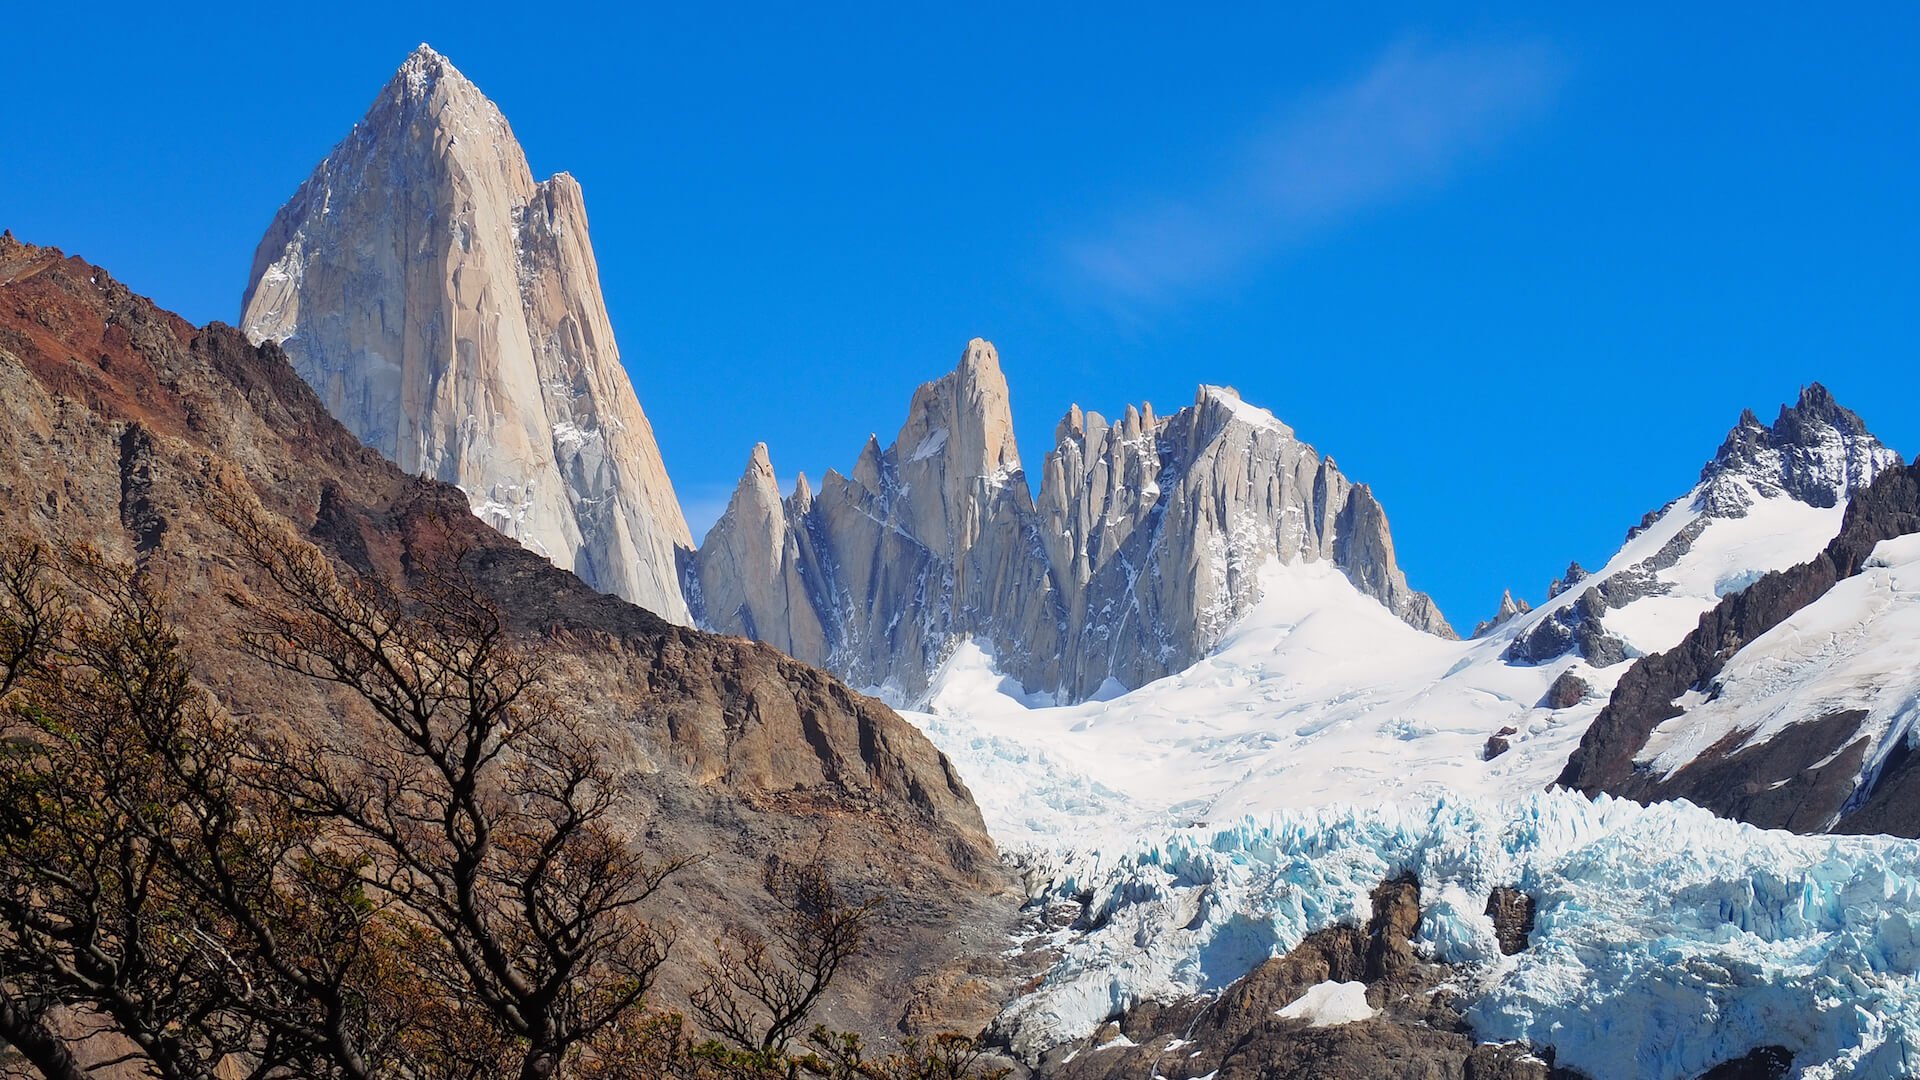 A closer view of the Piedras Blancas Glacier